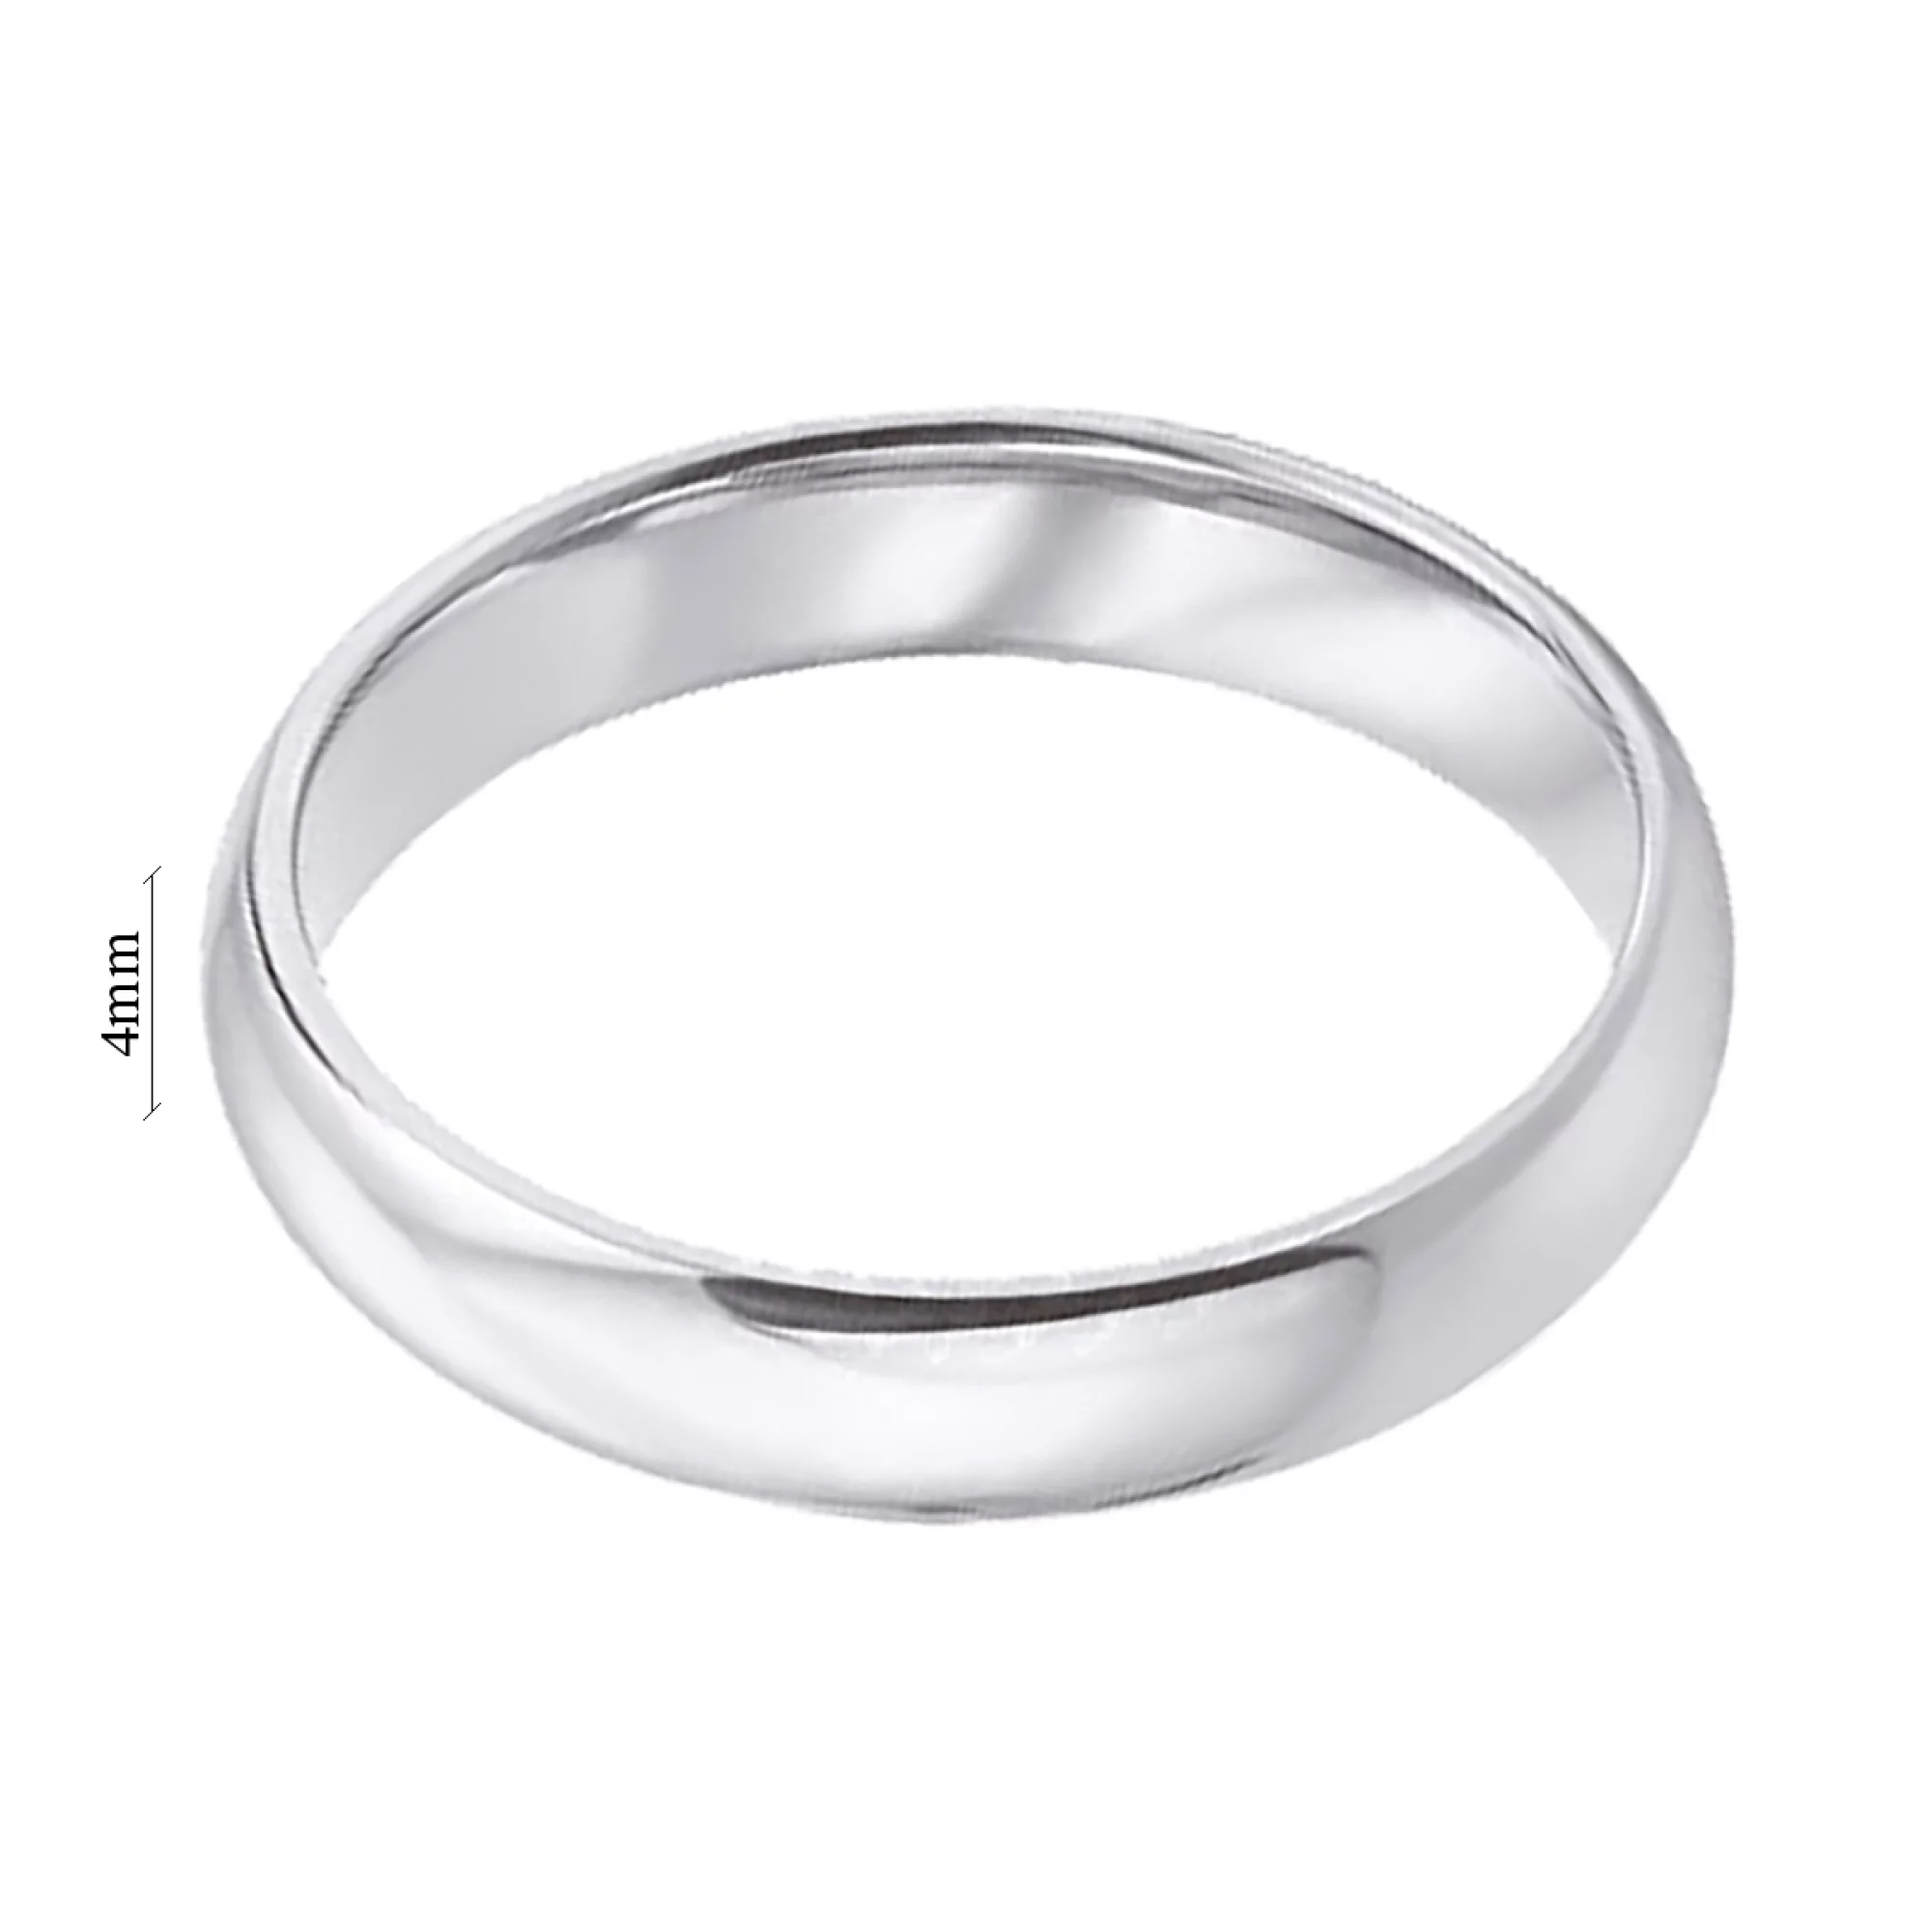 Обручальное кольцо из белого золота серии комфорт в классическом стиле - 778145 – изображение 4